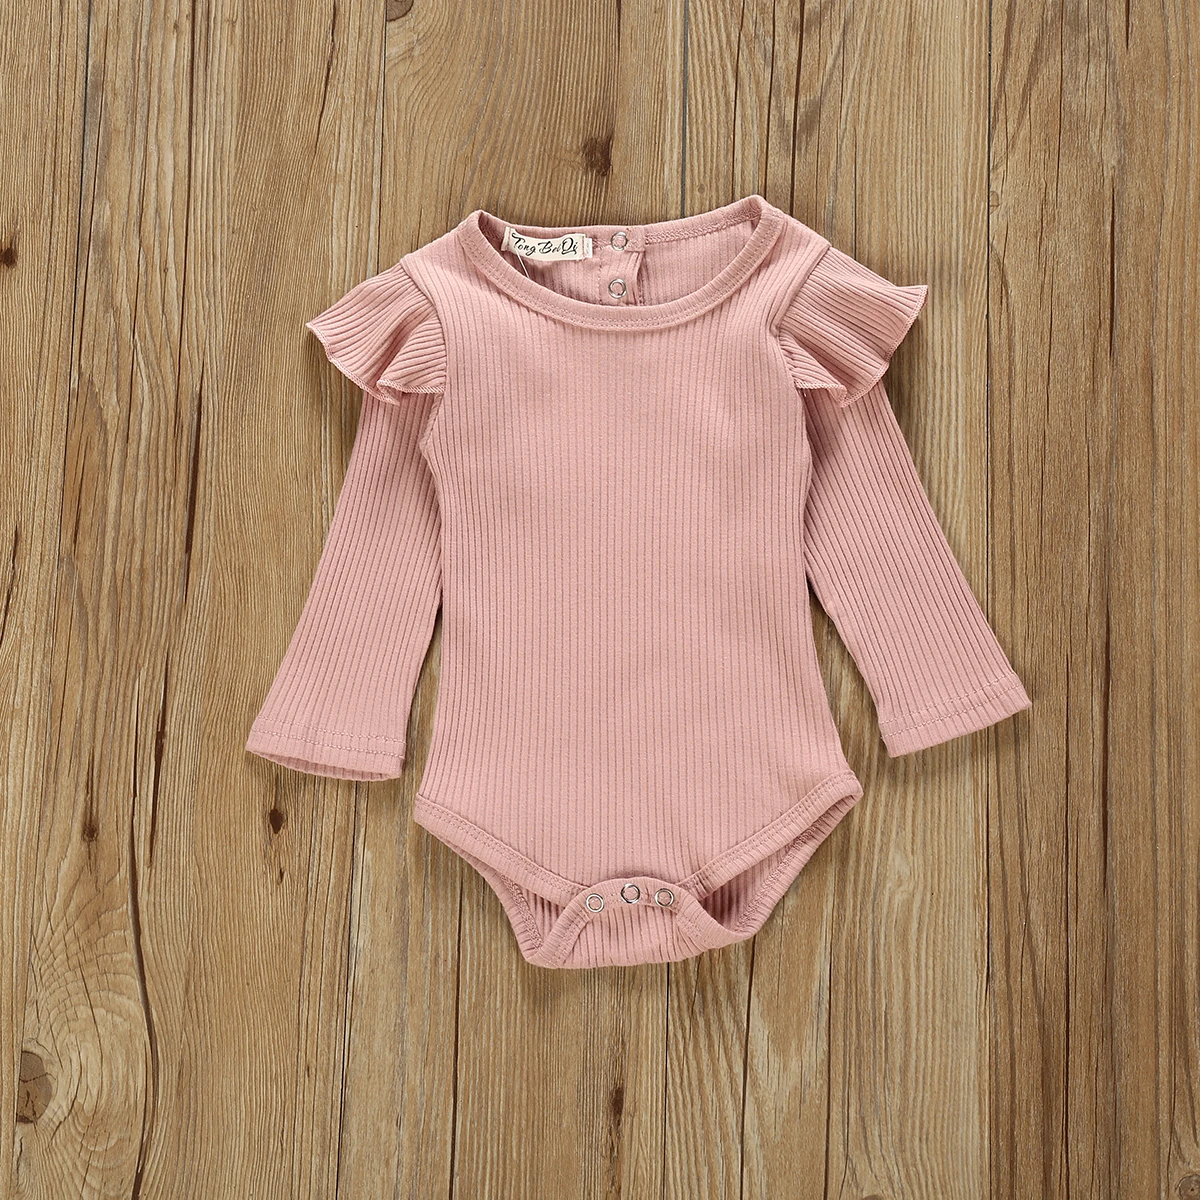 Комплект одежды для девочек, одежда для новорожденных девочек розовый топ с длинными рукавами, комбинезон, длинные штаны в полоску осенняя одежда из 2 предметов детская одежда